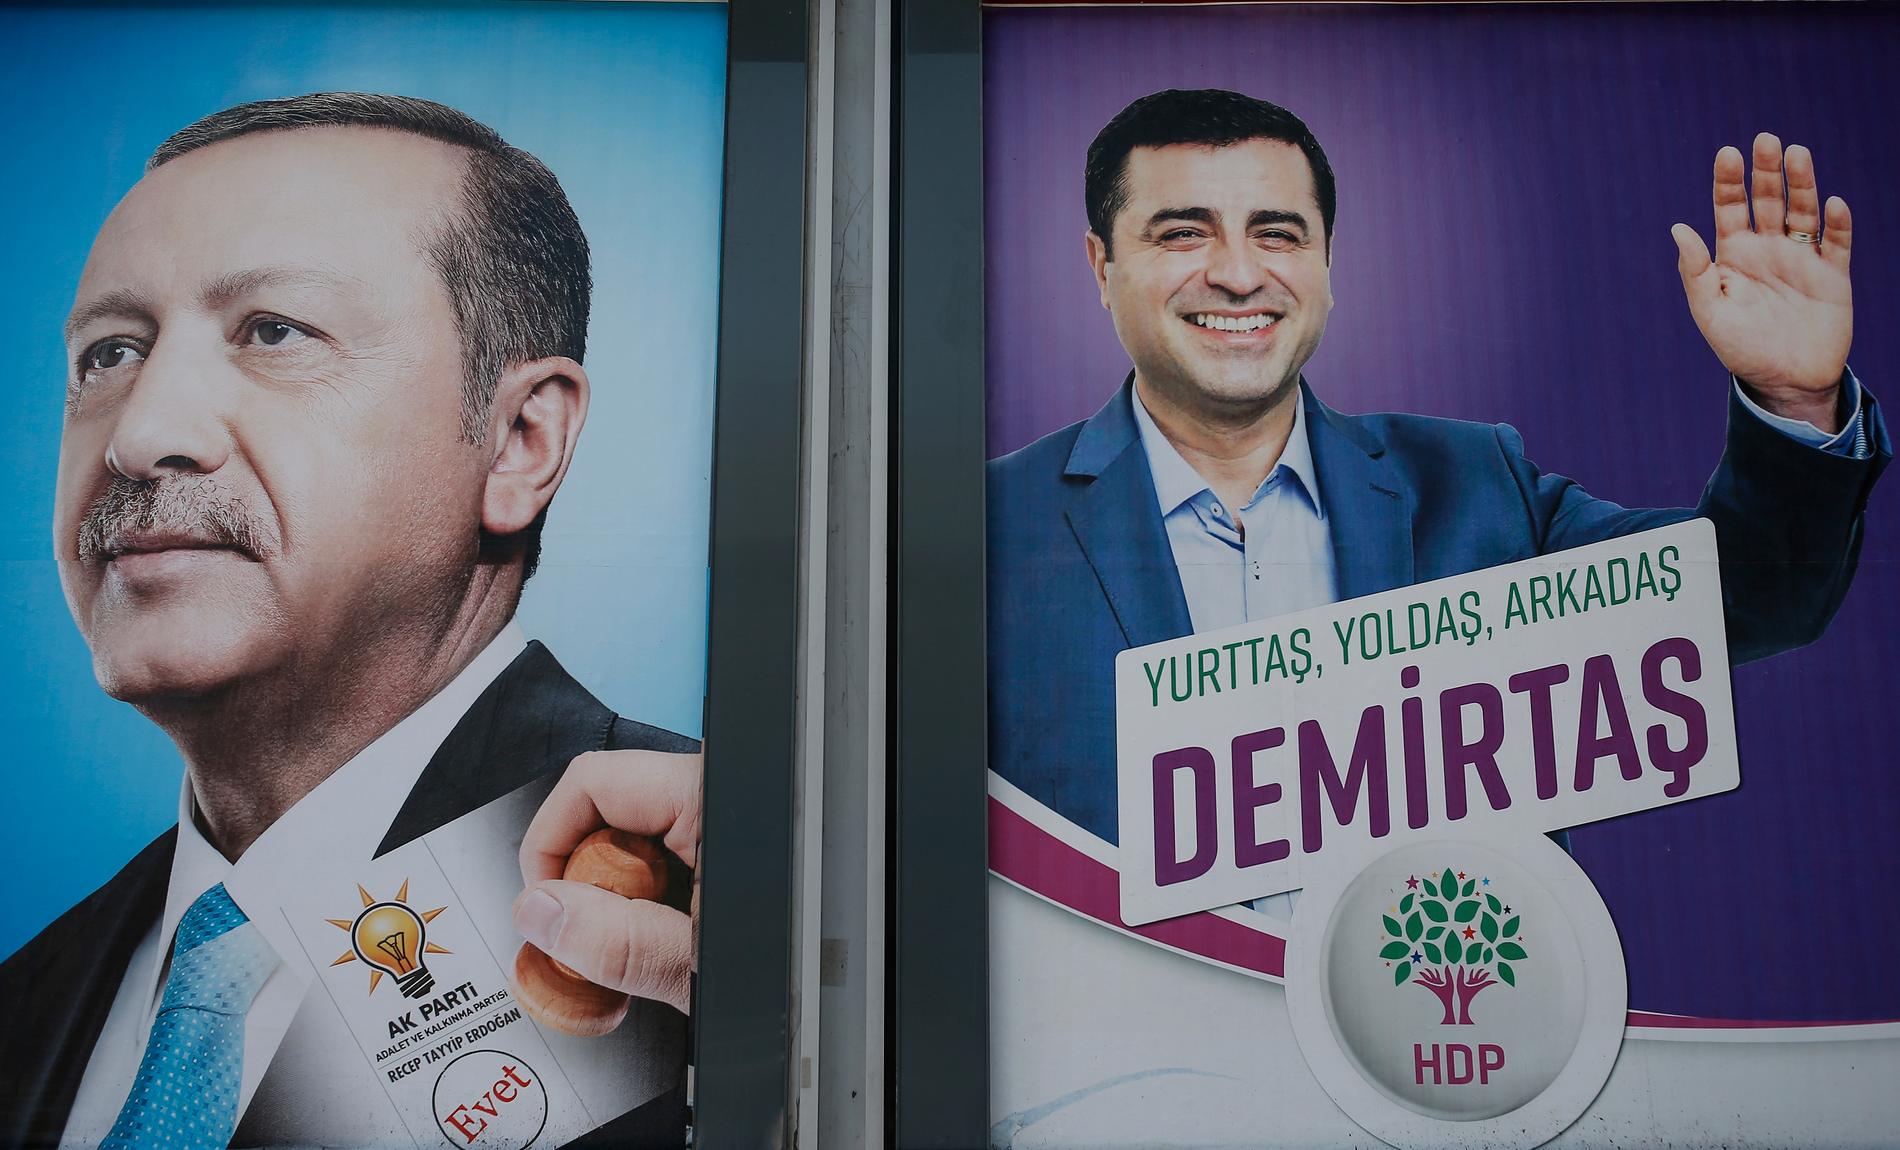 Valaffischer med Turkiets president Recep Tayyip Erdogan, till vänster och en av utmanarna pro-kurdiska HDP, Selahattin Demirtas, på en vägg i Istanbul inför presidentvalet i juni 2018.